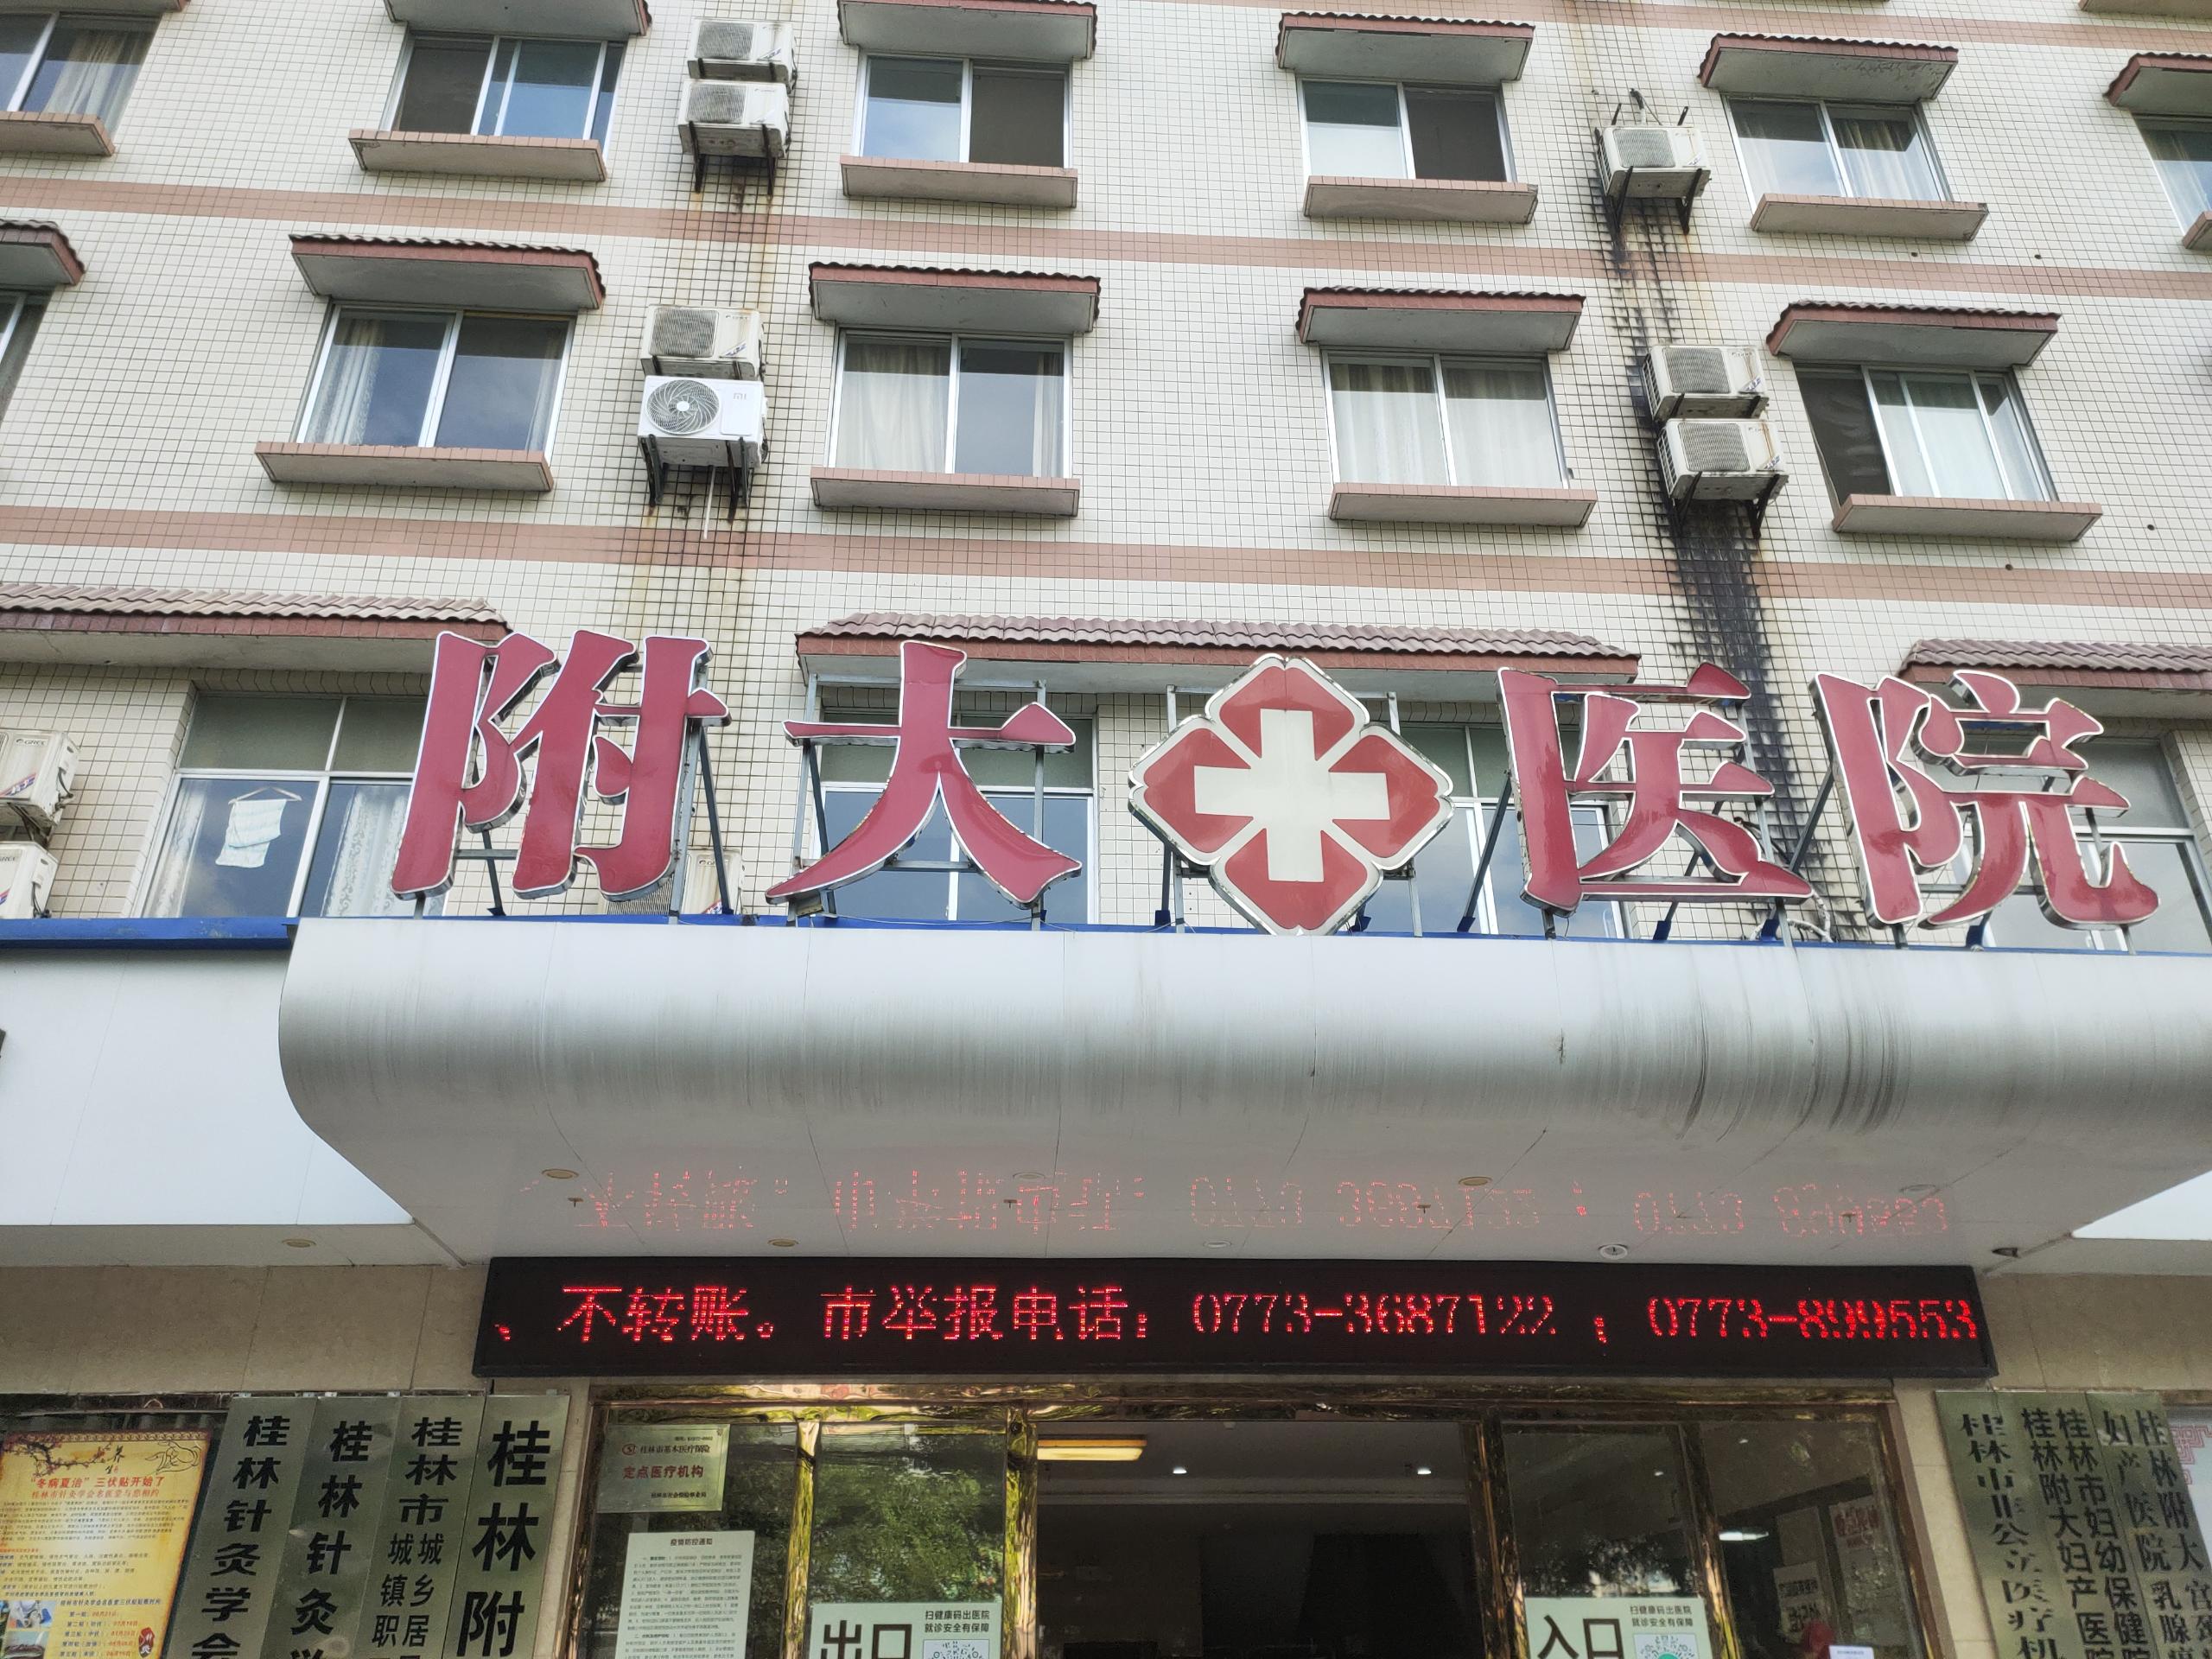 超声波骨密度测量仪被广西壮族自治区桂林附大医院采购